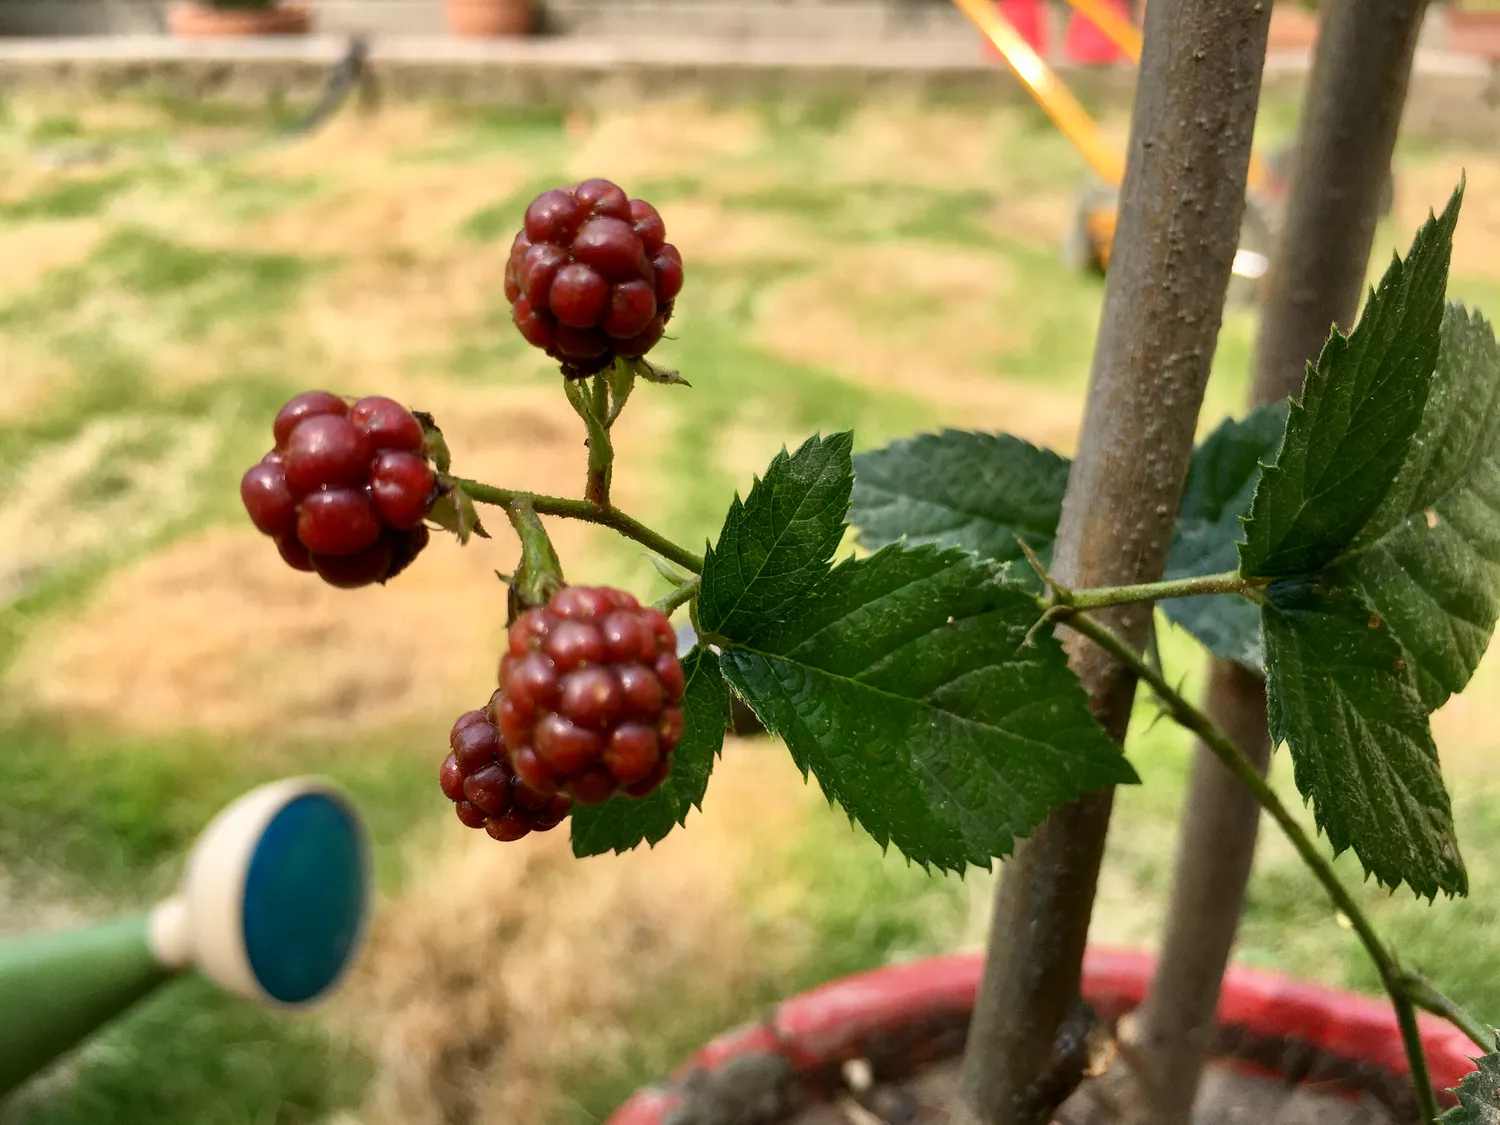 Thronless blackberries fruiting in a season